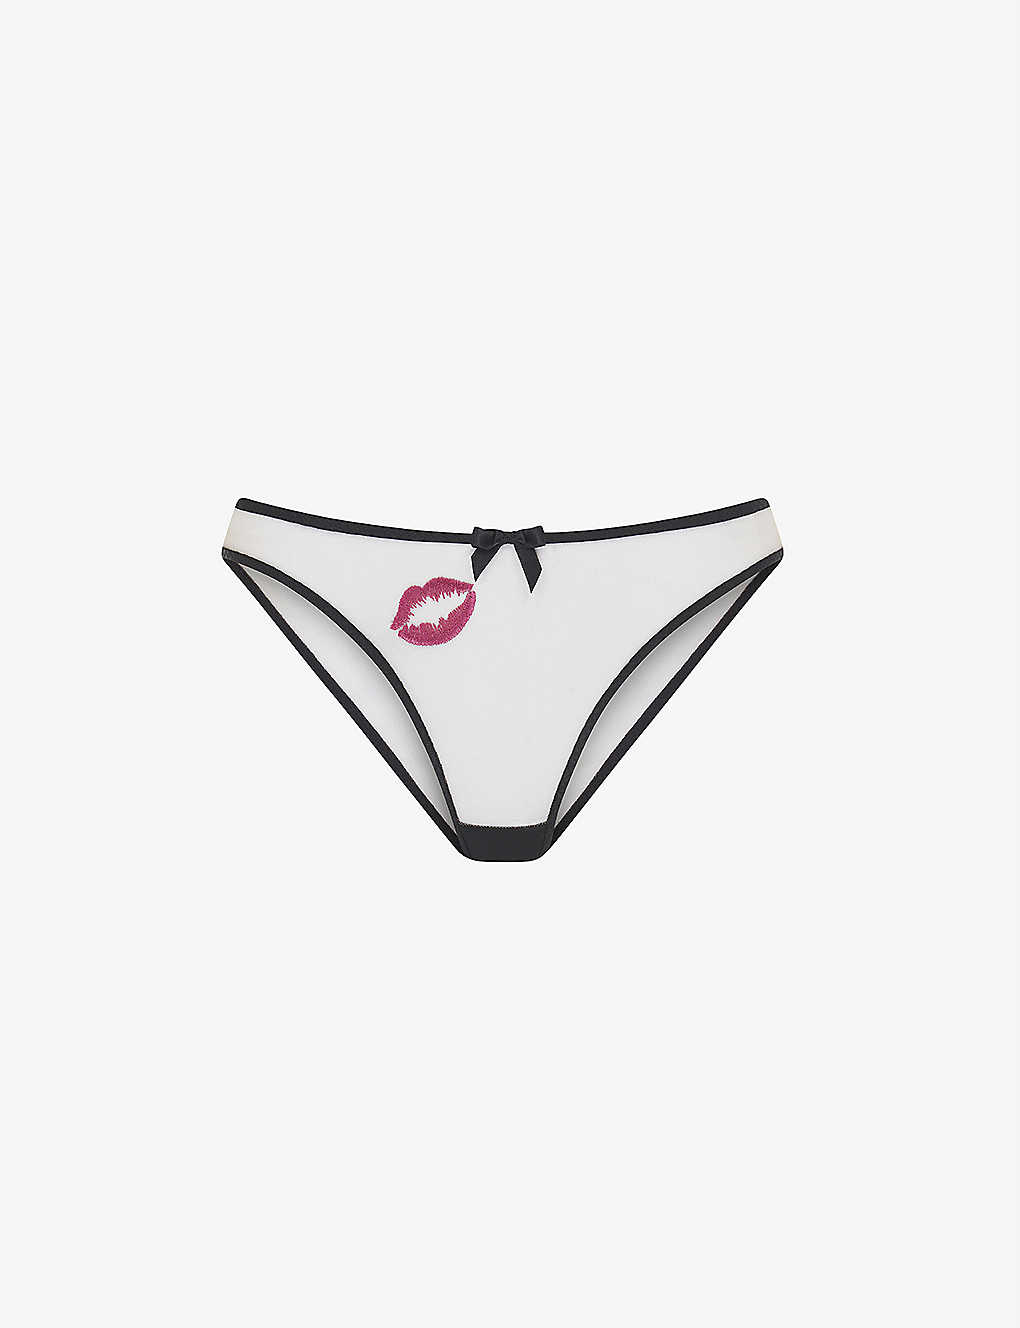 Lotie kiss-embroidered mesh suspender belt Selfridges & Co Women Clothing Underwear Underwear Accessories 